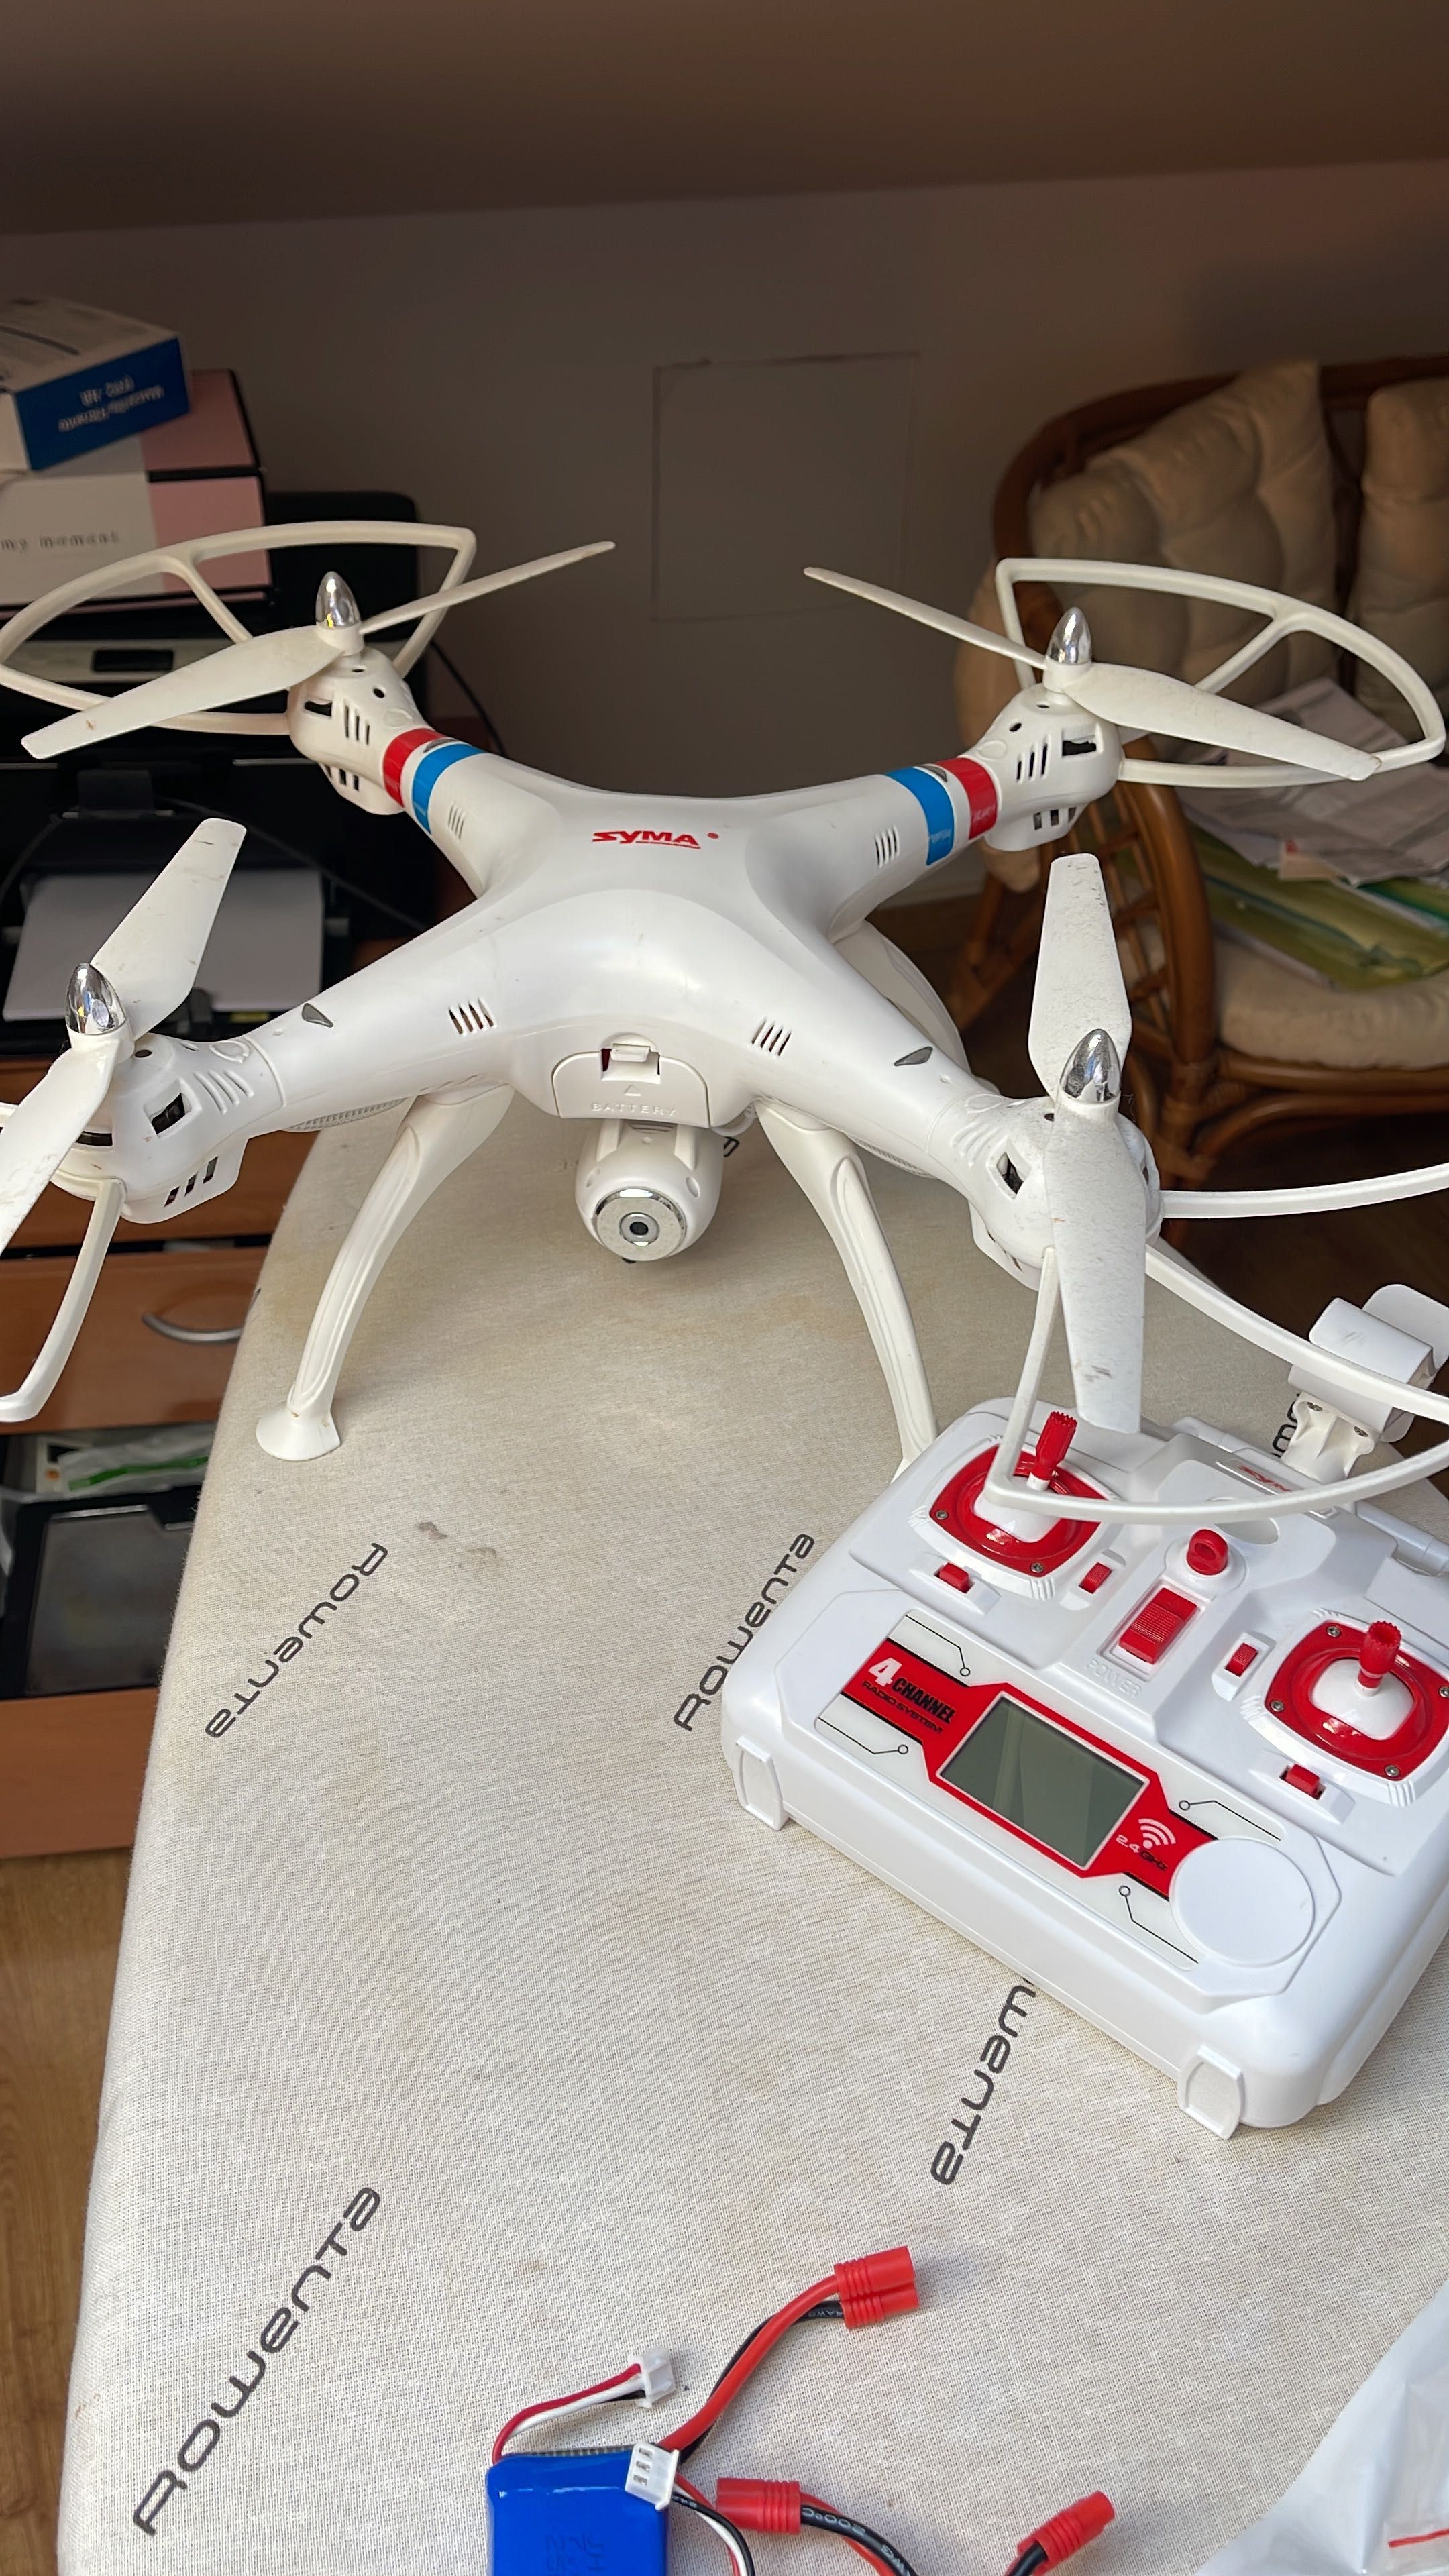 Drone syma x8w como novo